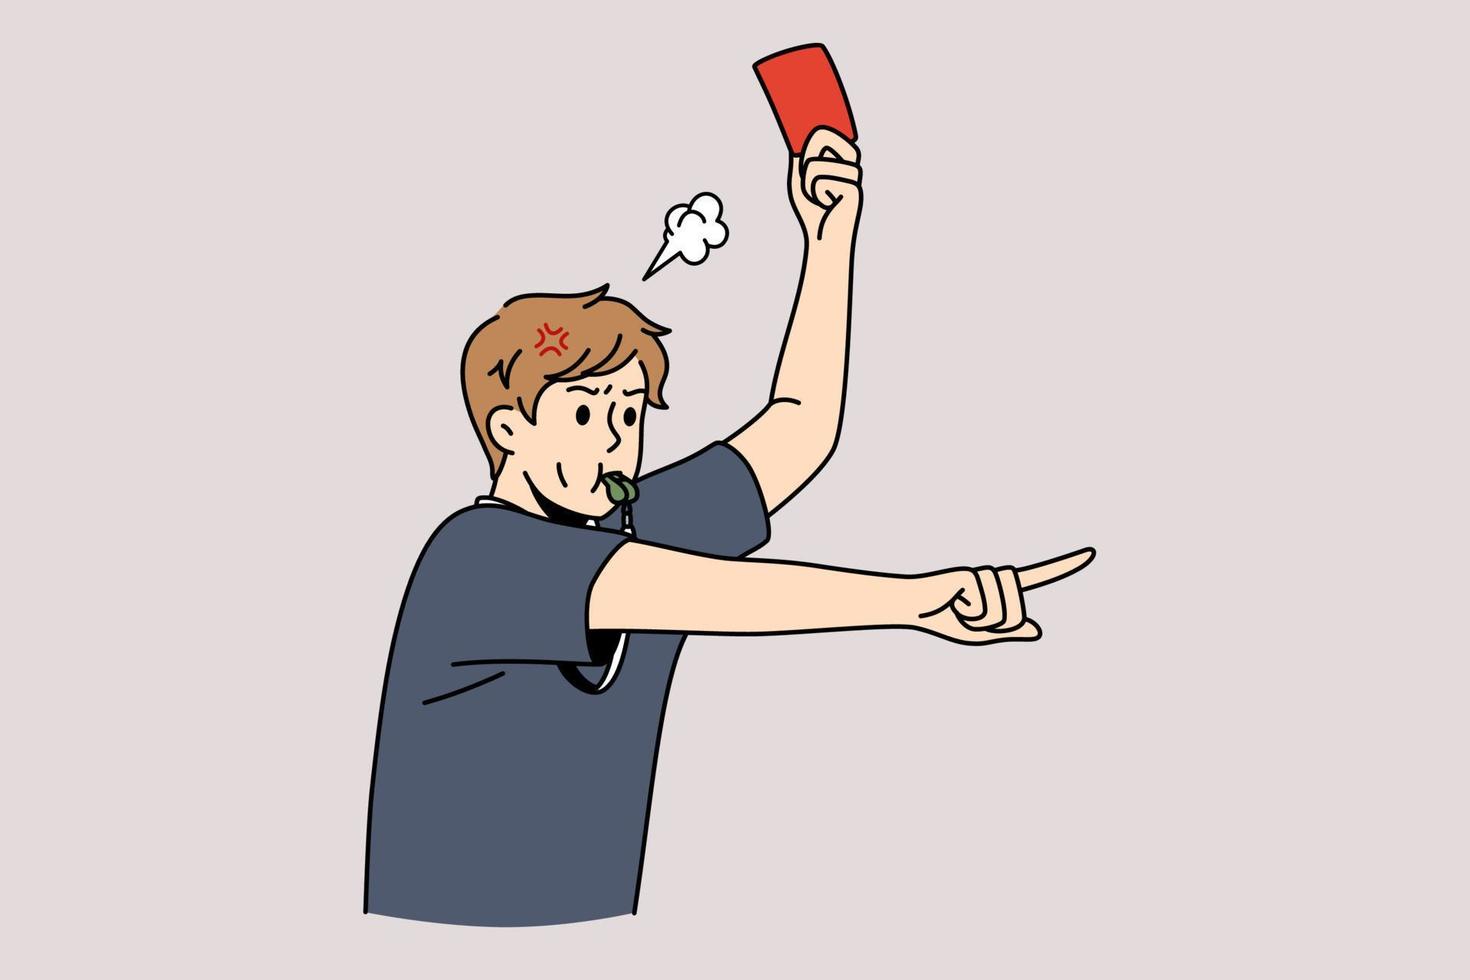 juez de fútbol y concepto de reglas de fútbol. joven juez de fútbol de pie y mostrando la tarjeta roja al jugador silbando durante la ilustración del vector del juego